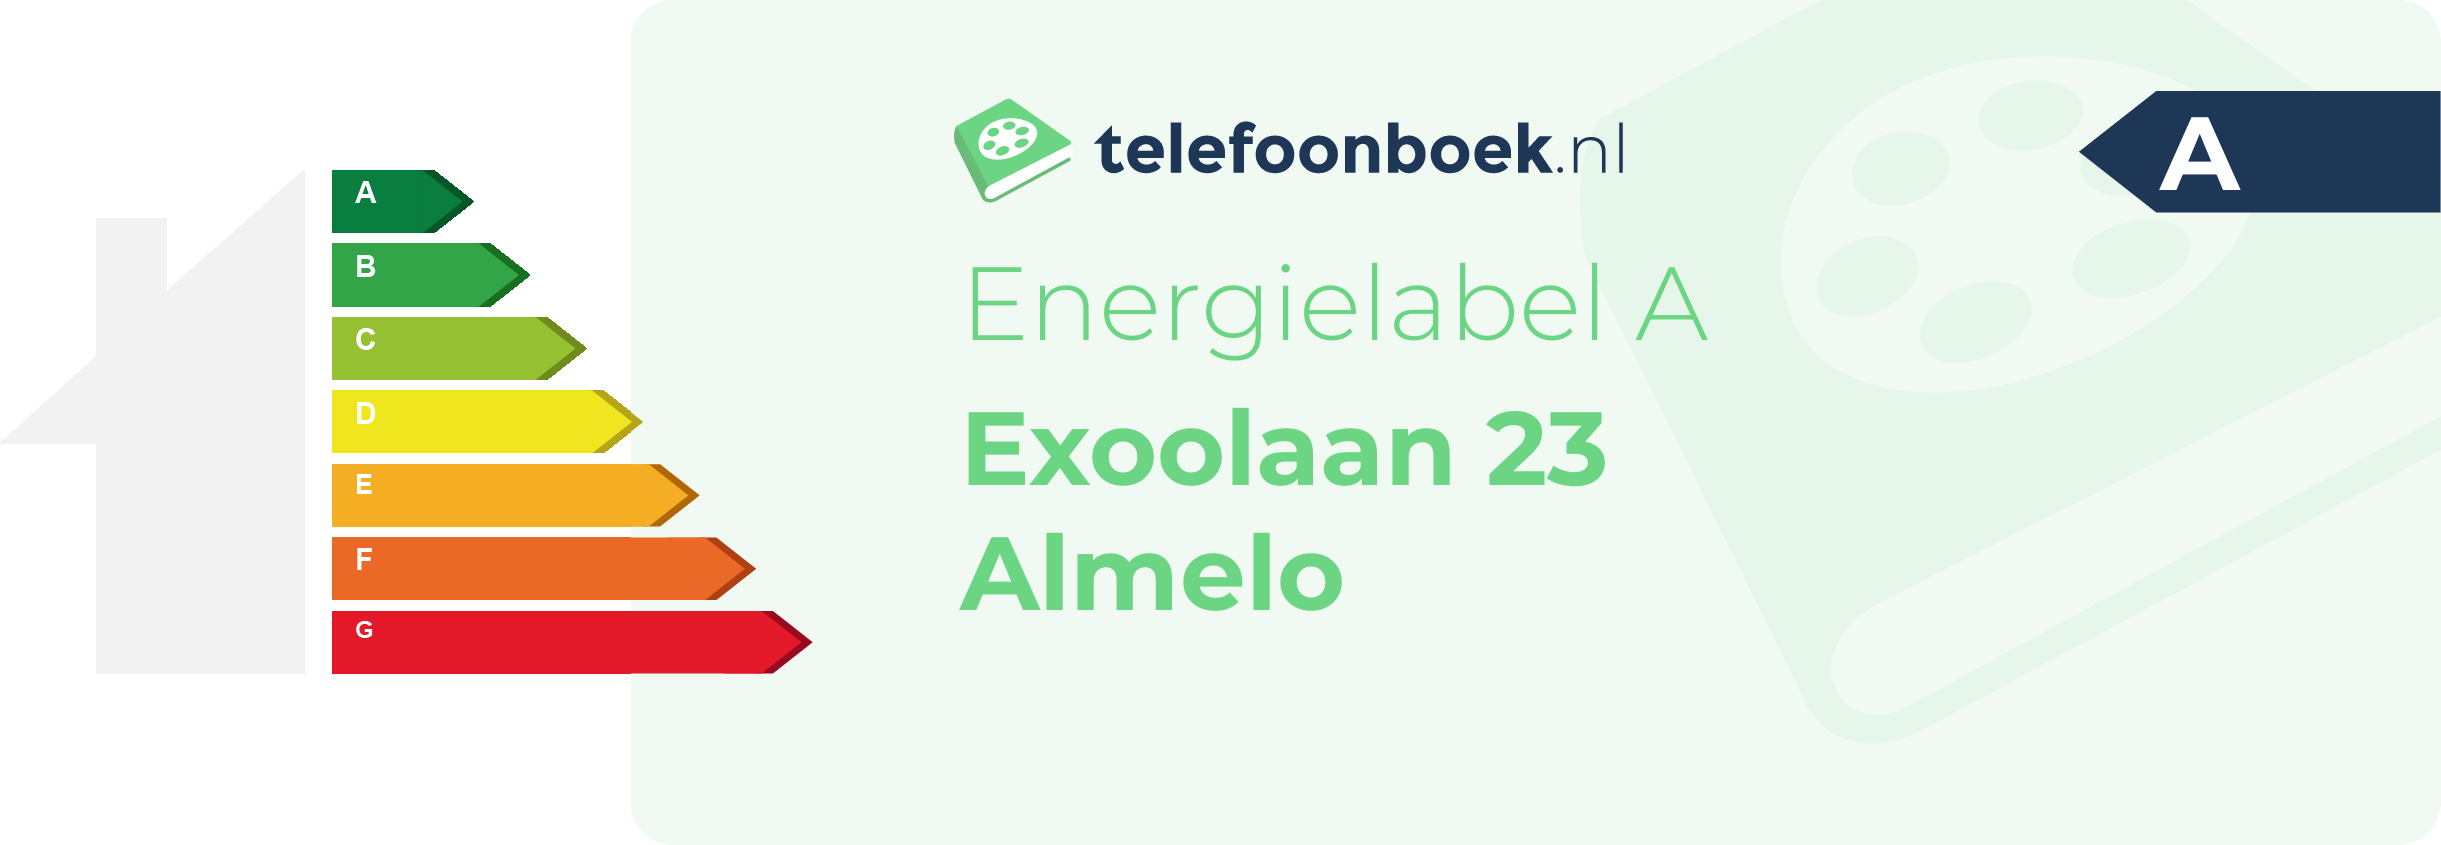 Energielabel Exoolaan 23 Almelo